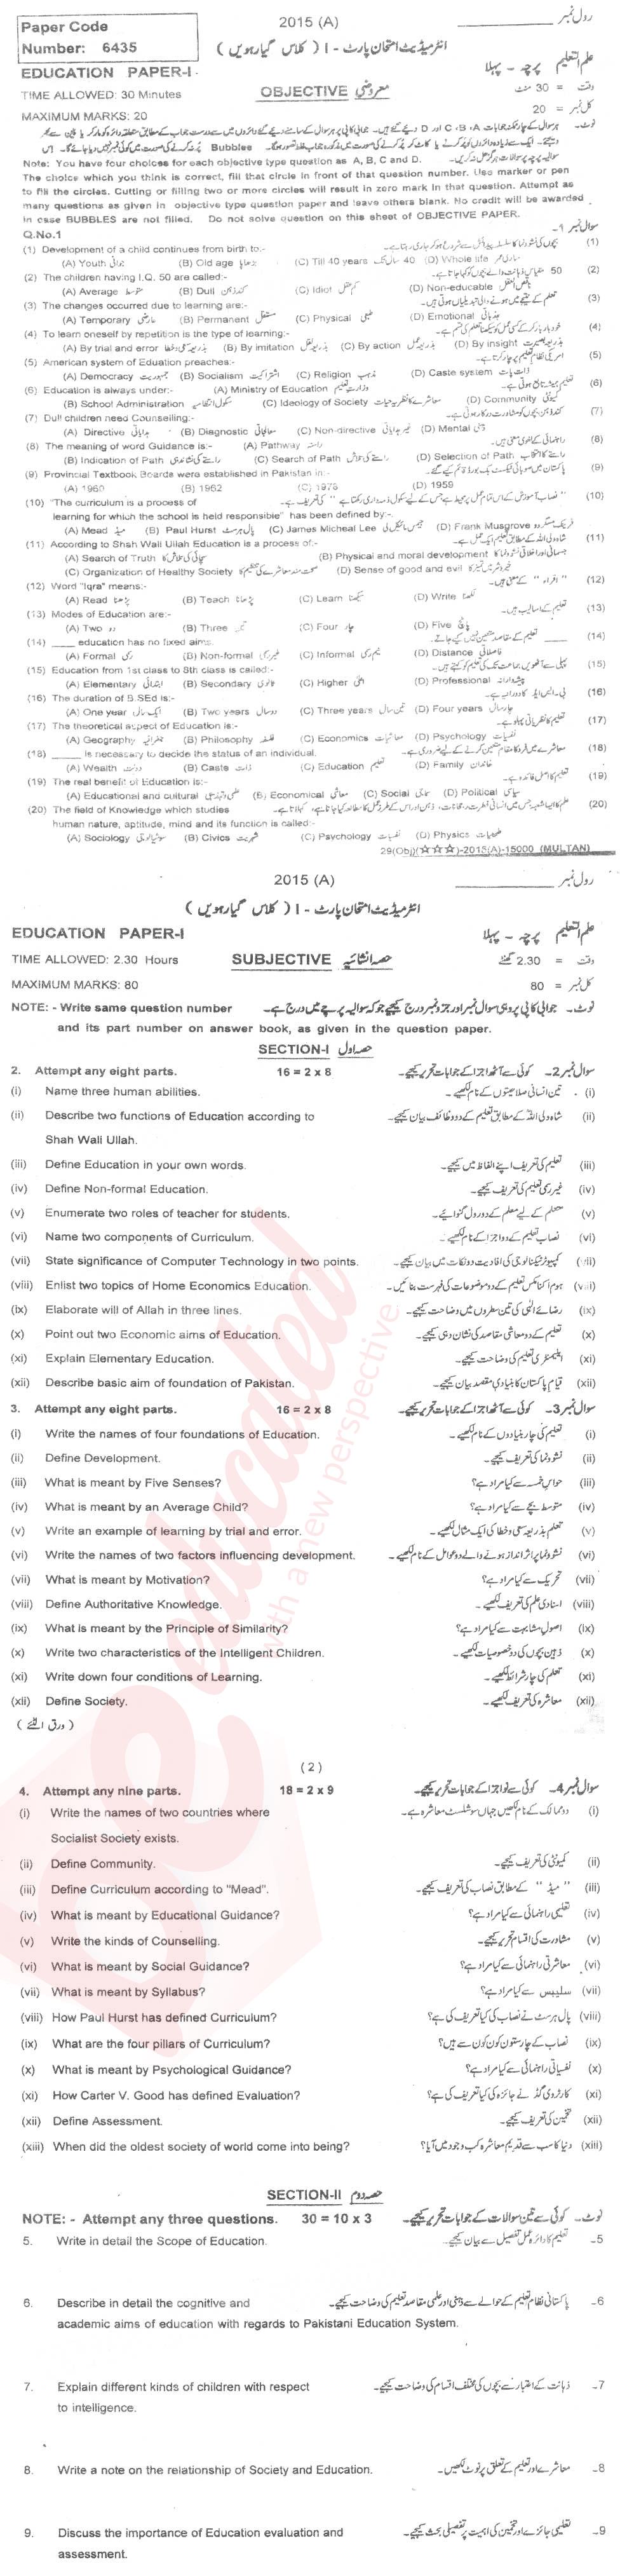 Education FA Part 1 Past Paper Group 1 BISE Multan 2015